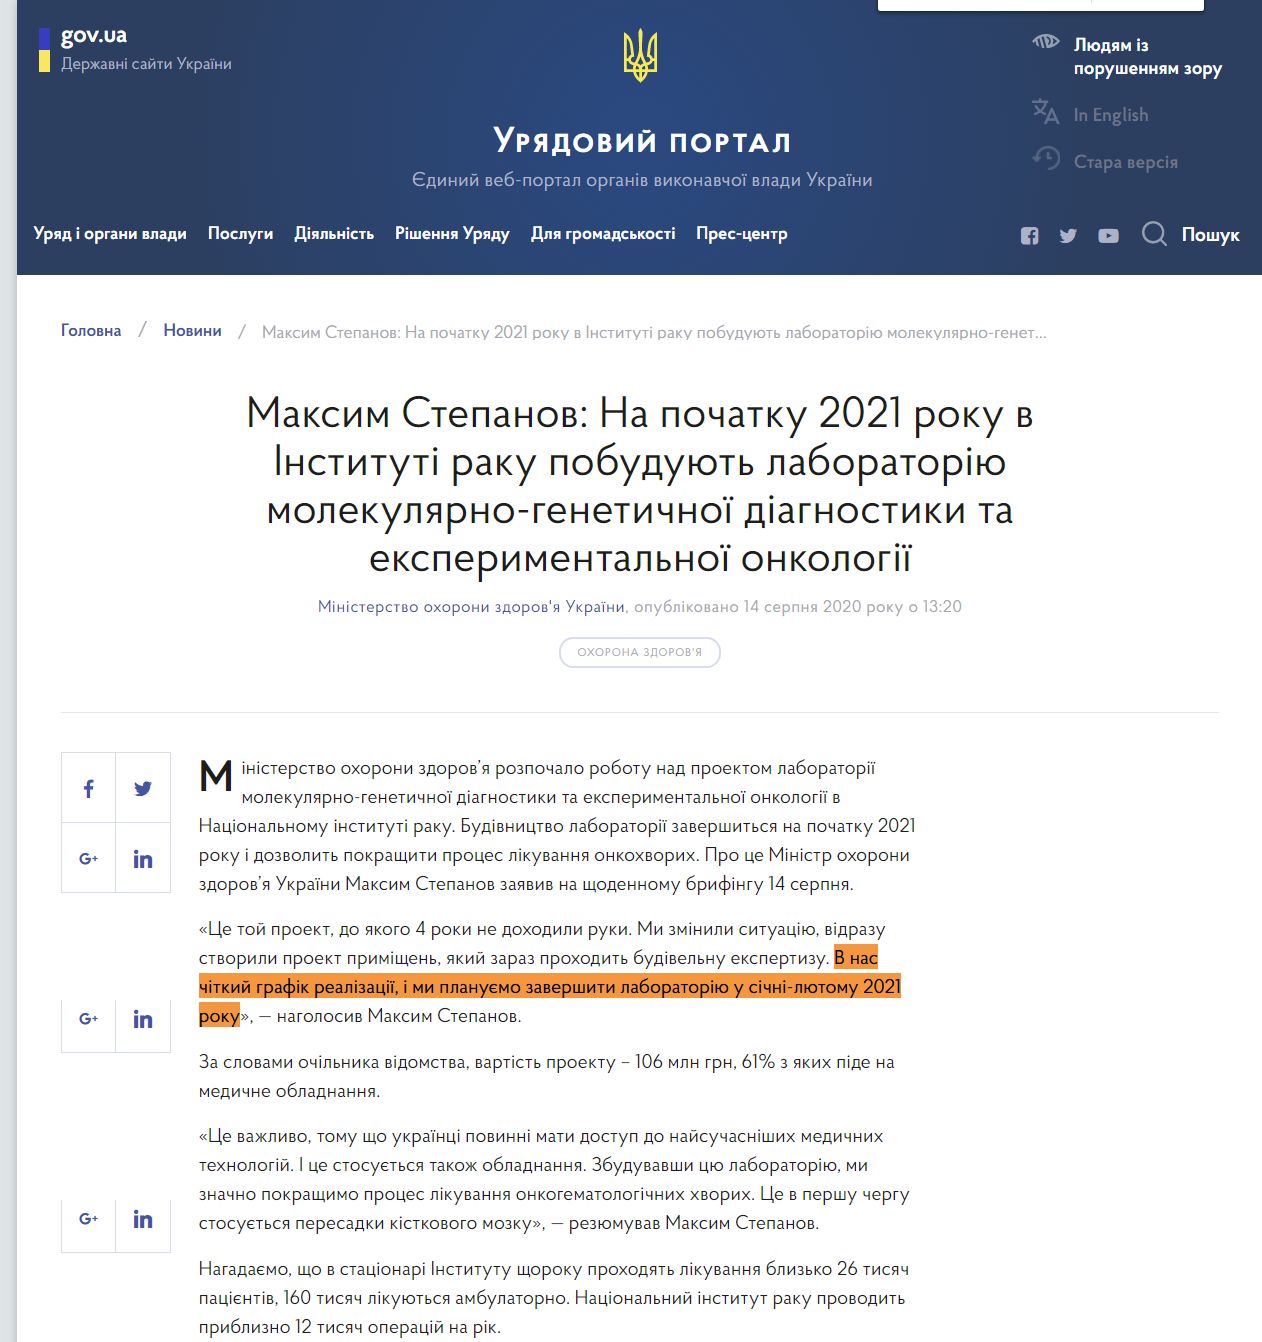 https://www.kmu.gov.ua/news/maksim-stepanov-na-pochatku-2021-roku-v-instituti-raku-pobuduyut-laboratoriyu-molekulyarno-genetichnoyi-diagnostiki-ta-eksperimentalnoyi-onkologiyi